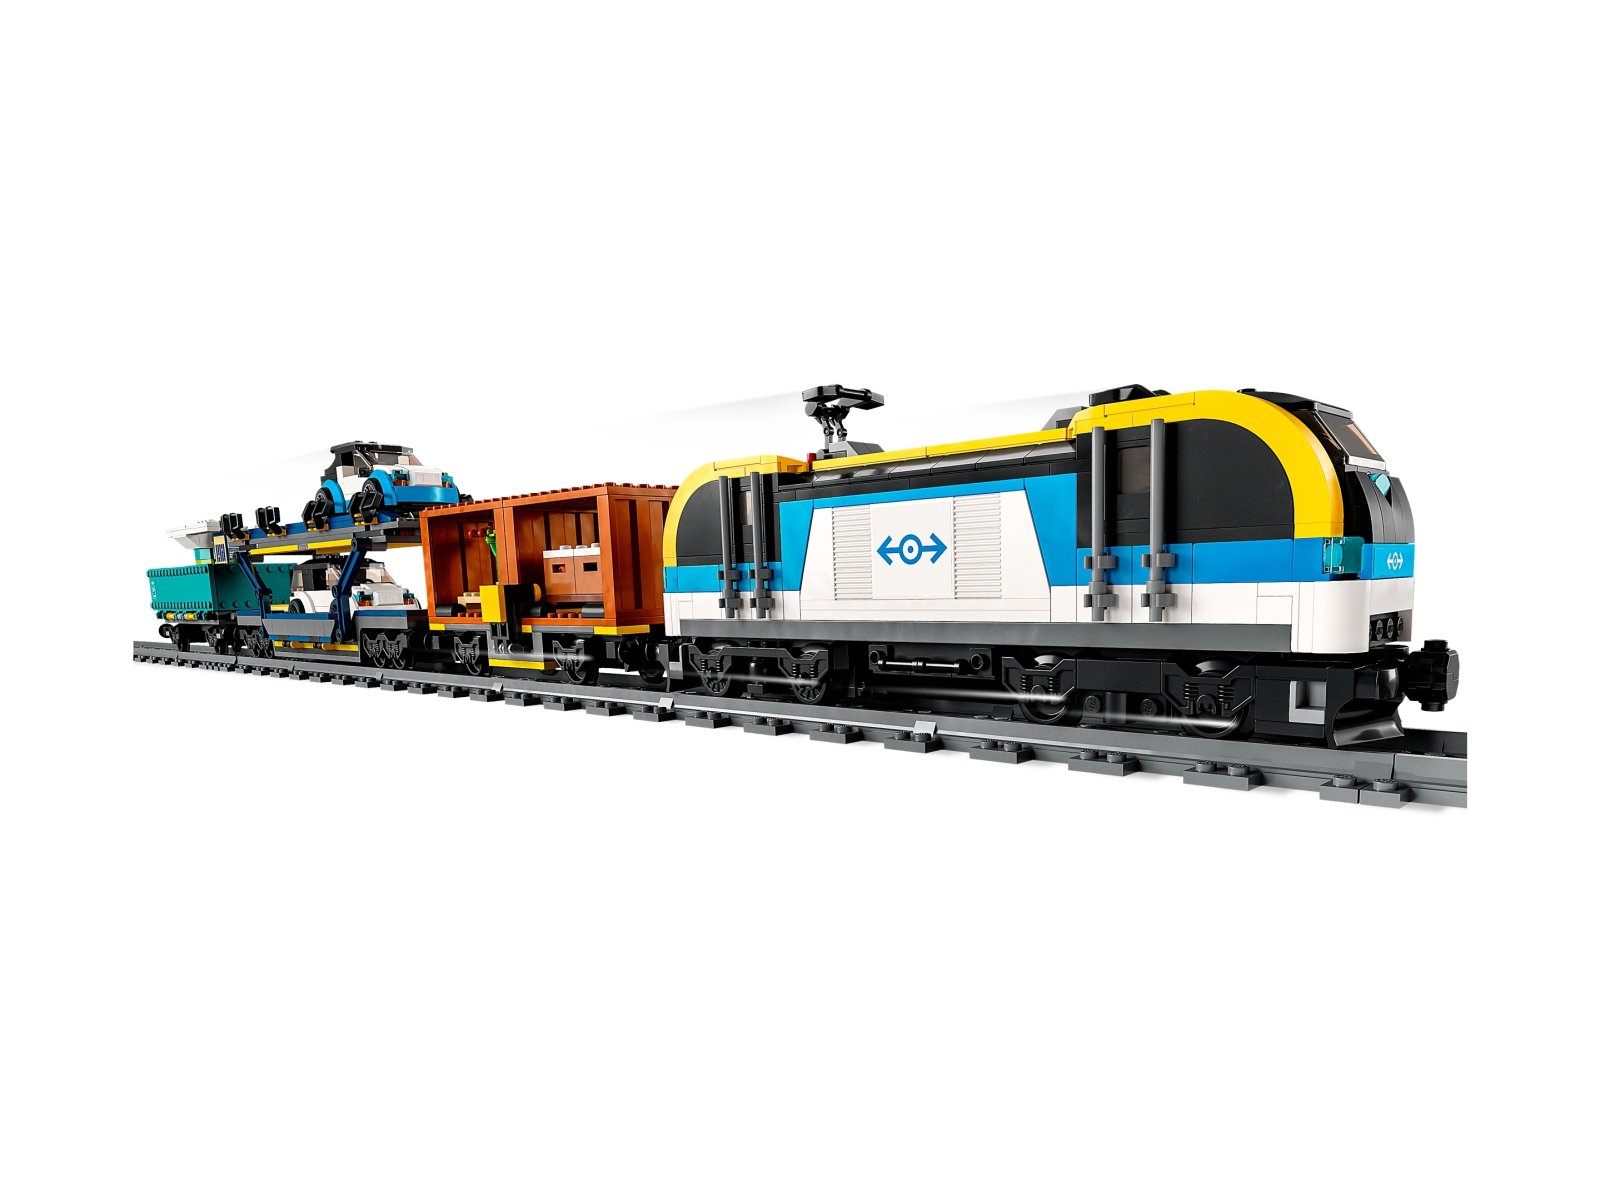 LEGO City 60336 Pociąg towarowy